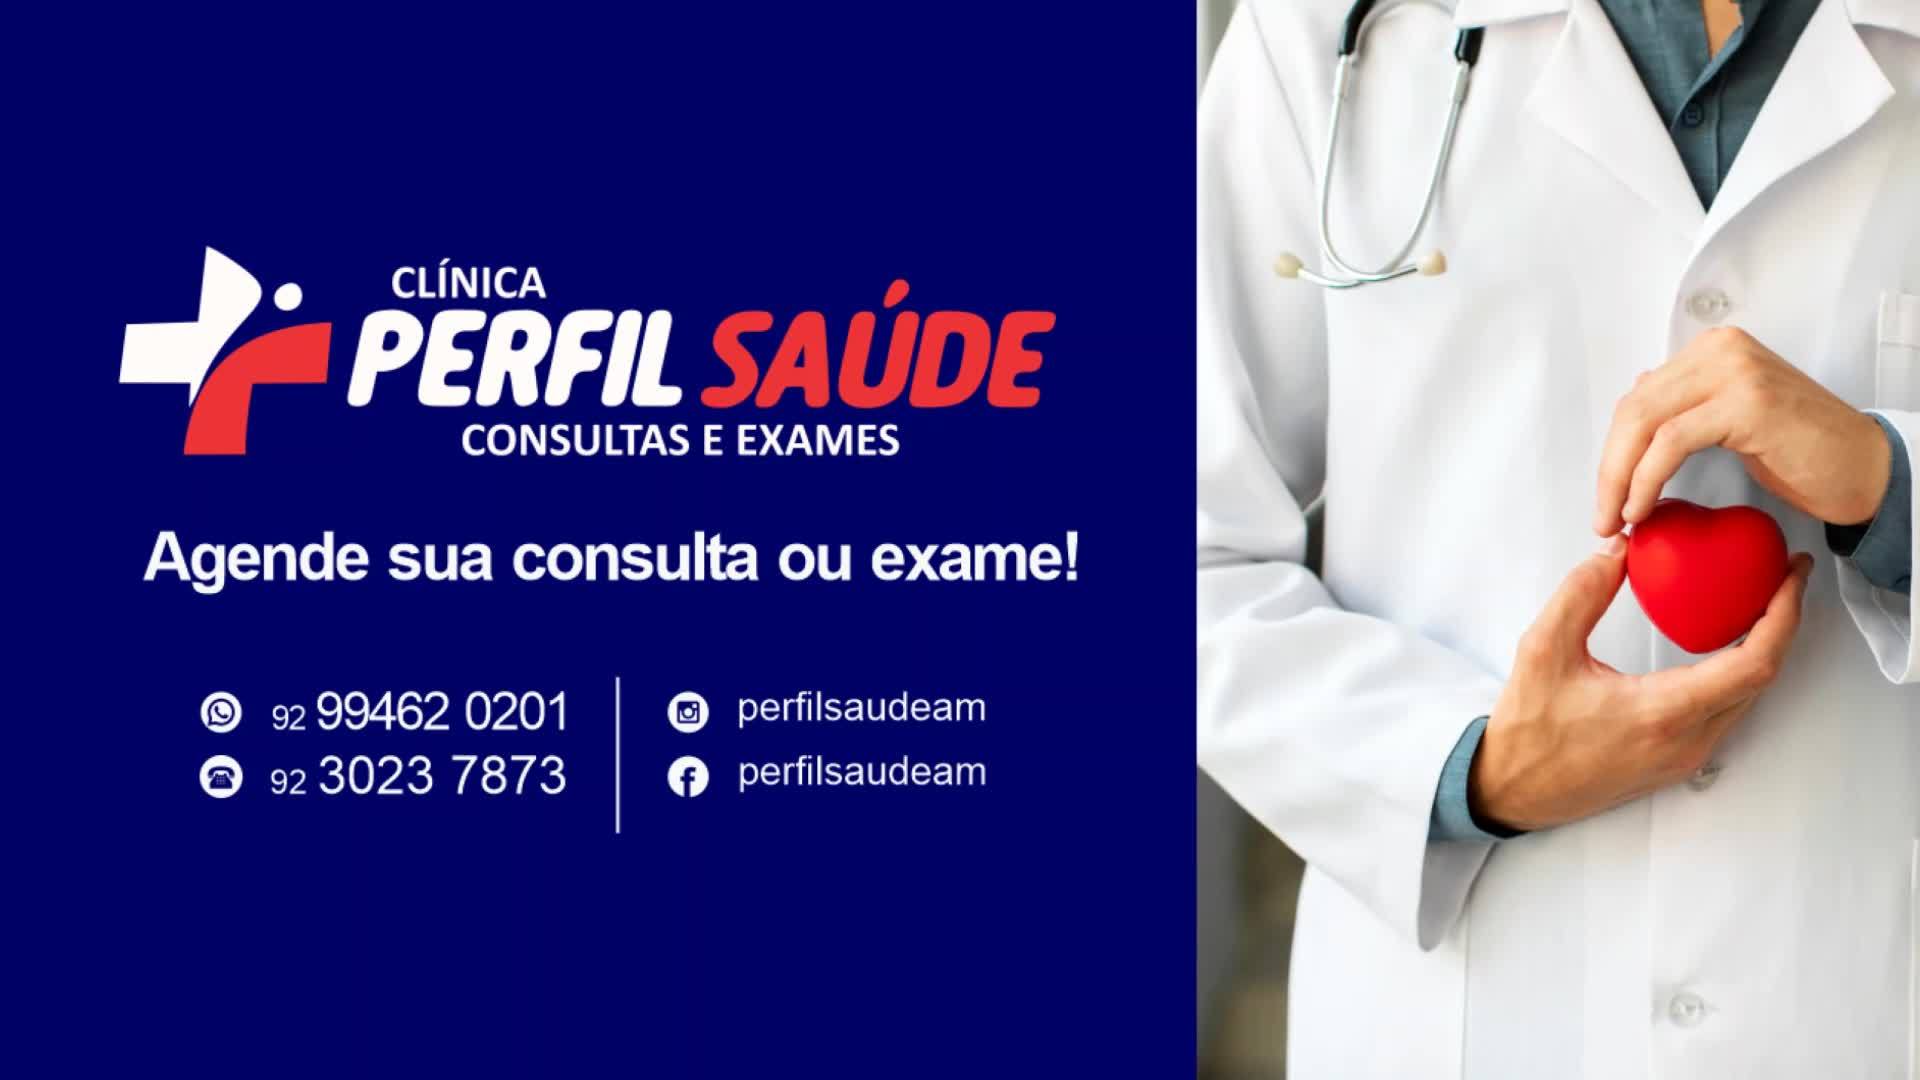 Perfil Saúde Inaugura Unidade Em Manaus Para Consultas E Exames A Preços Populares Wb Portal 6950